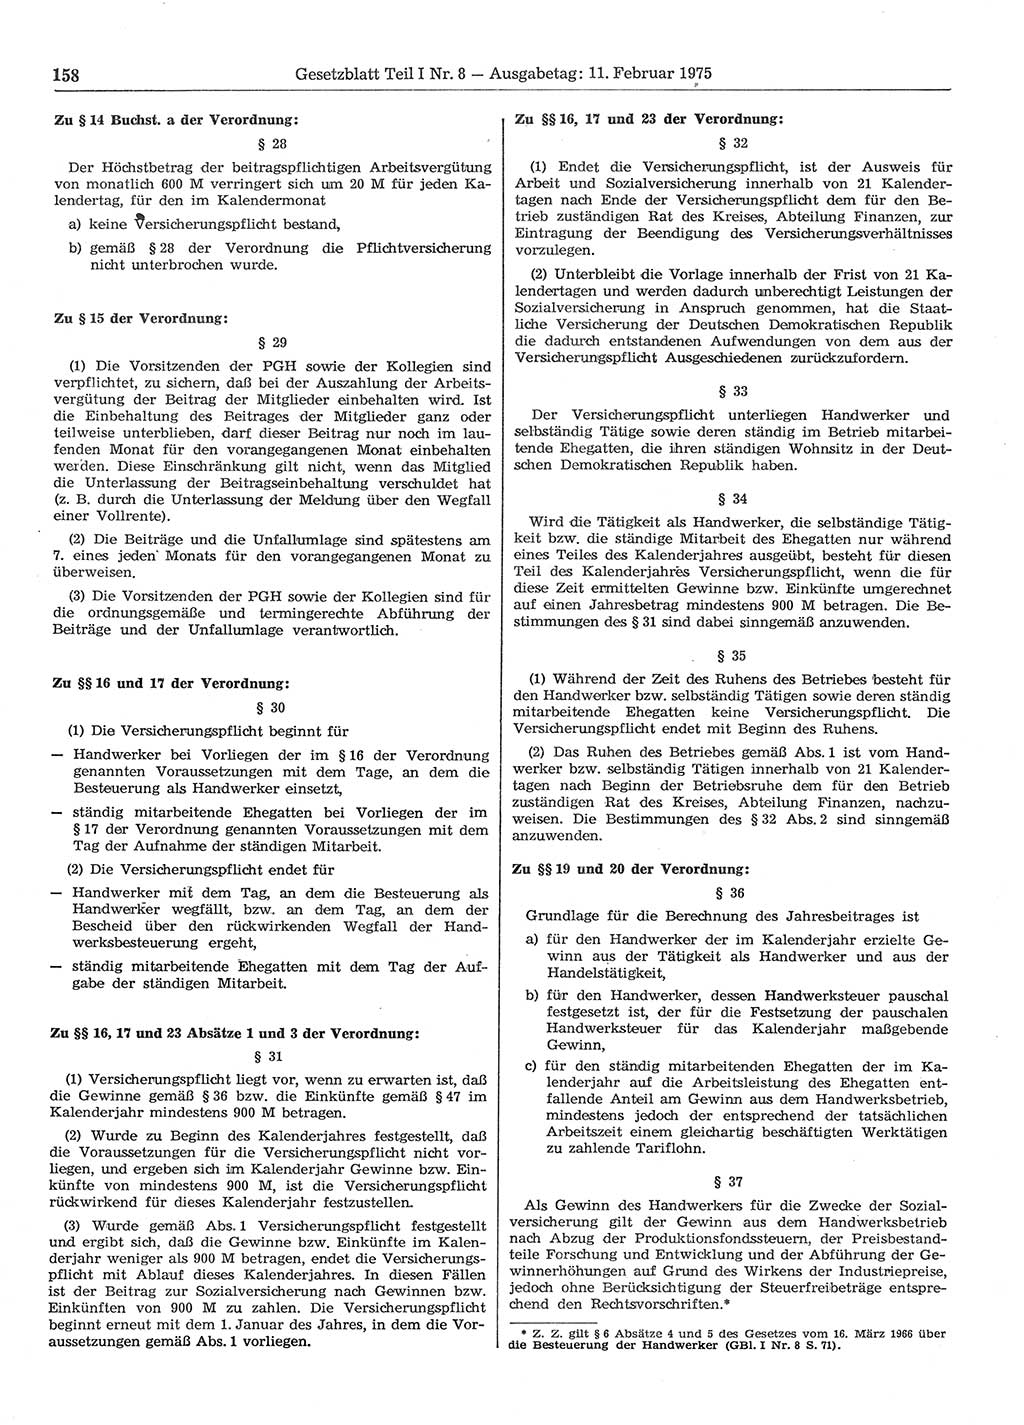 Gesetzblatt (GBl.) der Deutschen Demokratischen Republik (DDR) Teil Ⅰ 1975, Seite 158 (GBl. DDR Ⅰ 1975, S. 158)